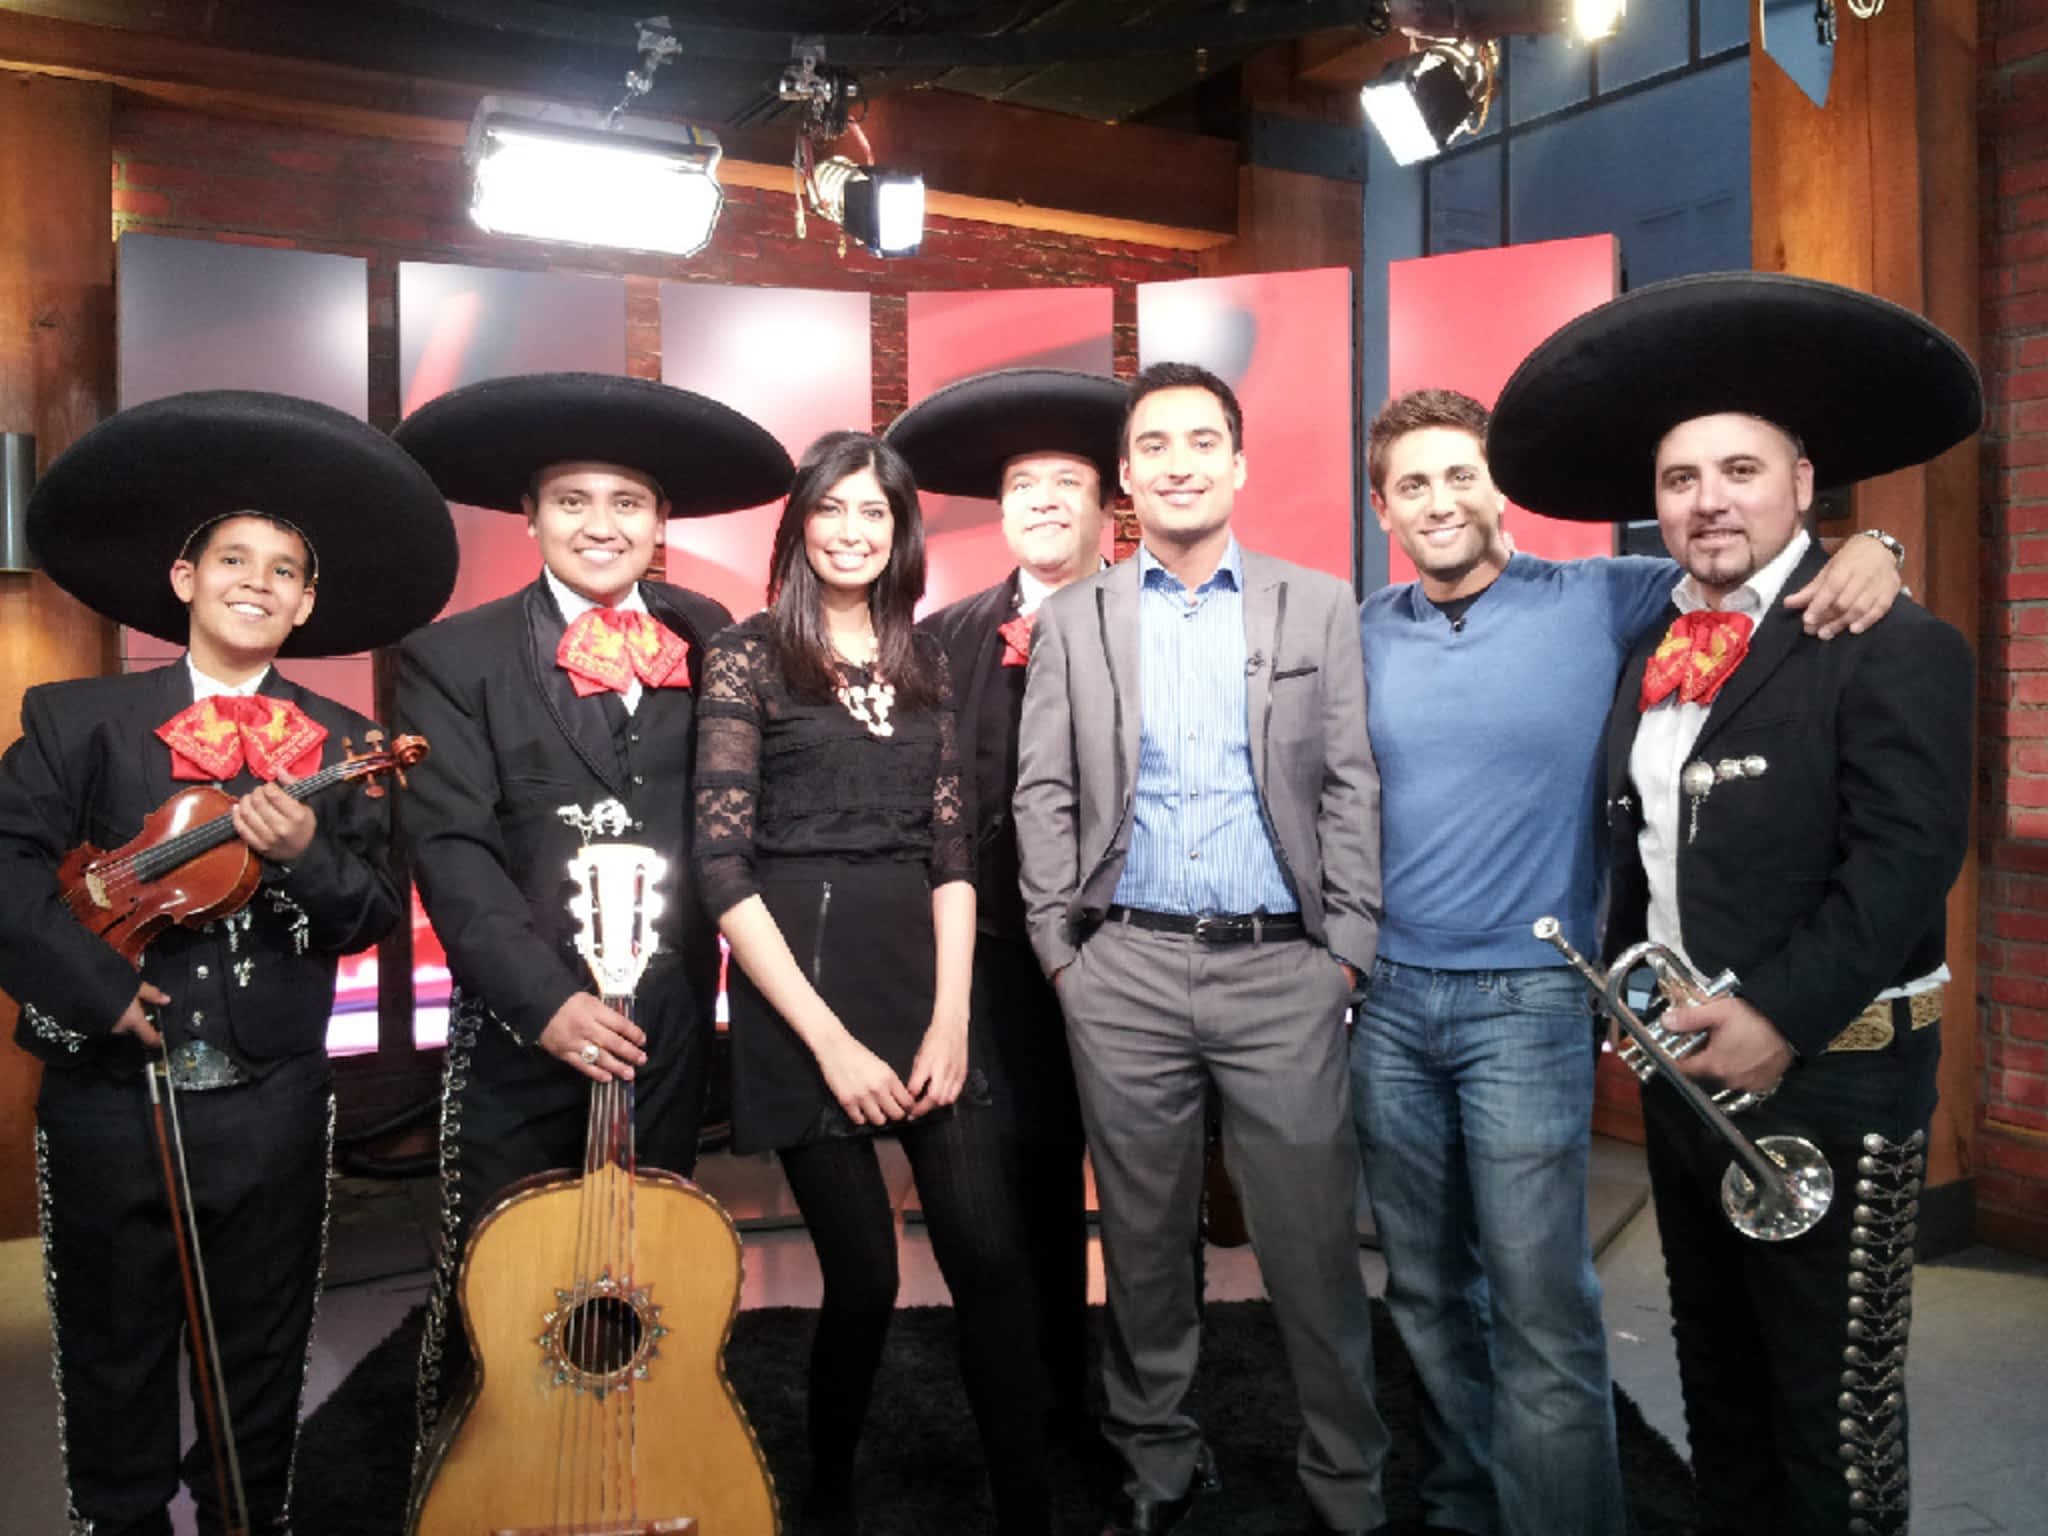 photo Mexico de Noche Entertainment Group